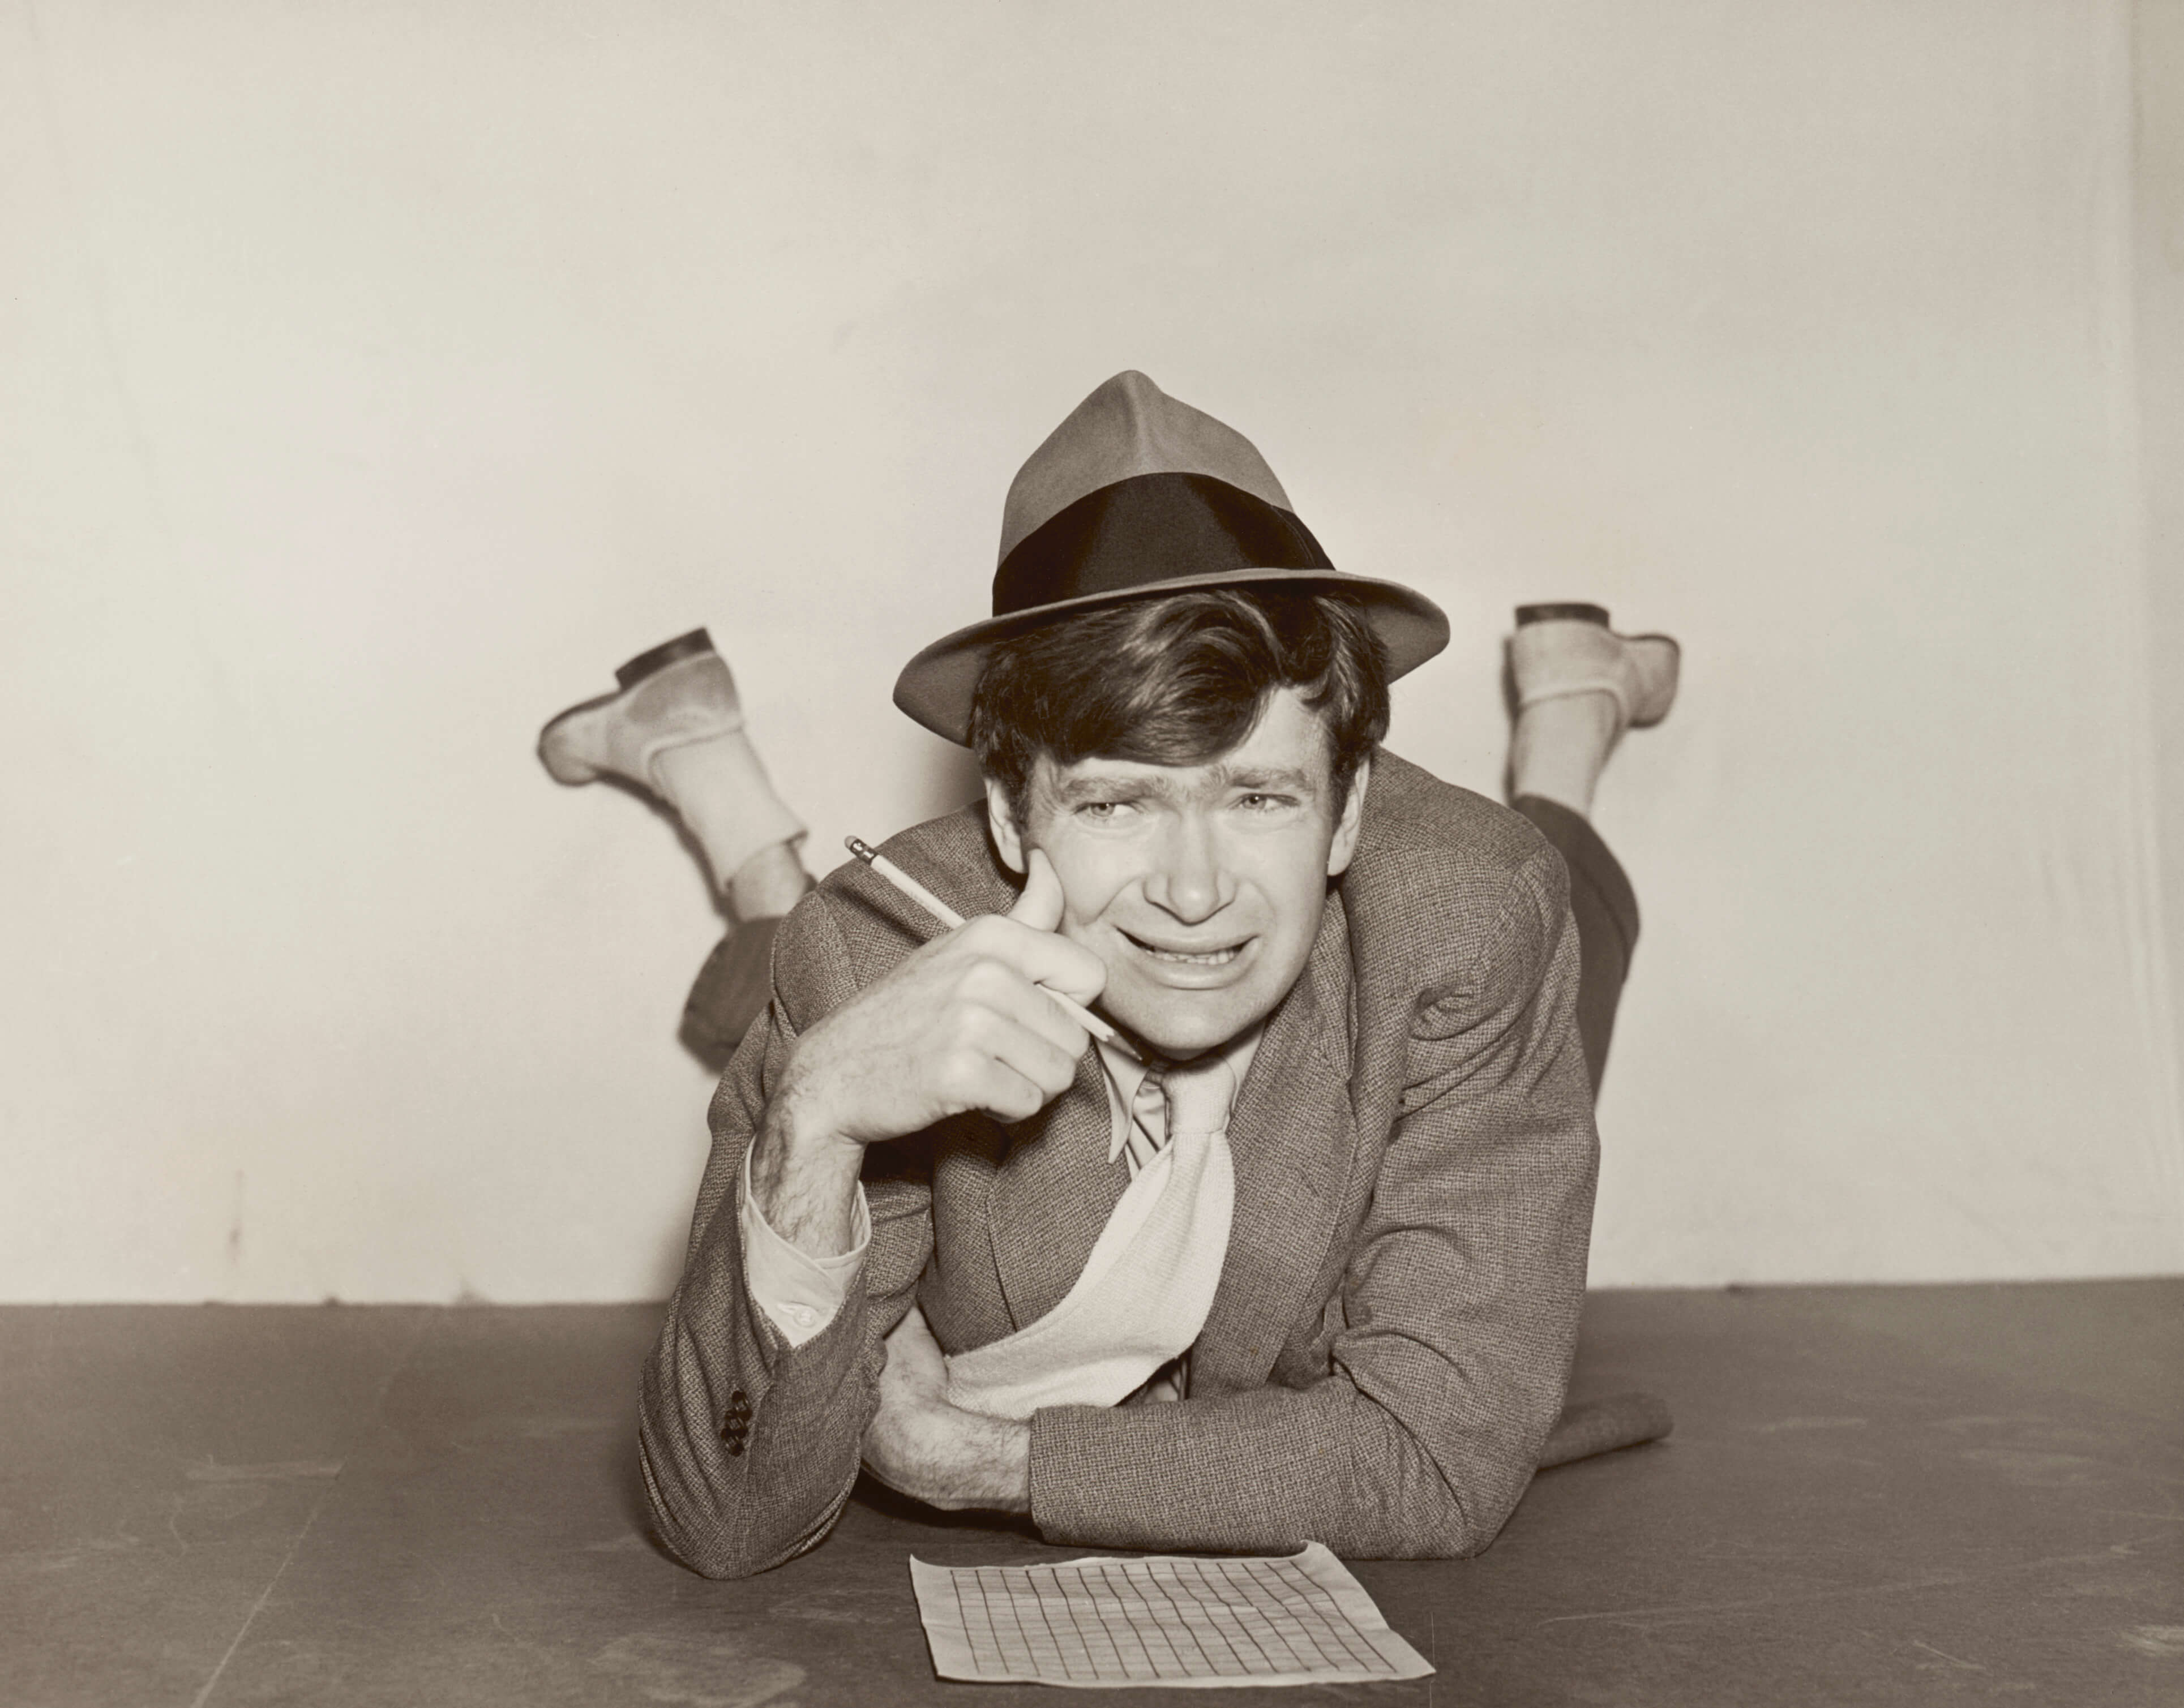 Uno sguardo al ruolo di Buddy Ebsen in "The Andy Griffith Show"